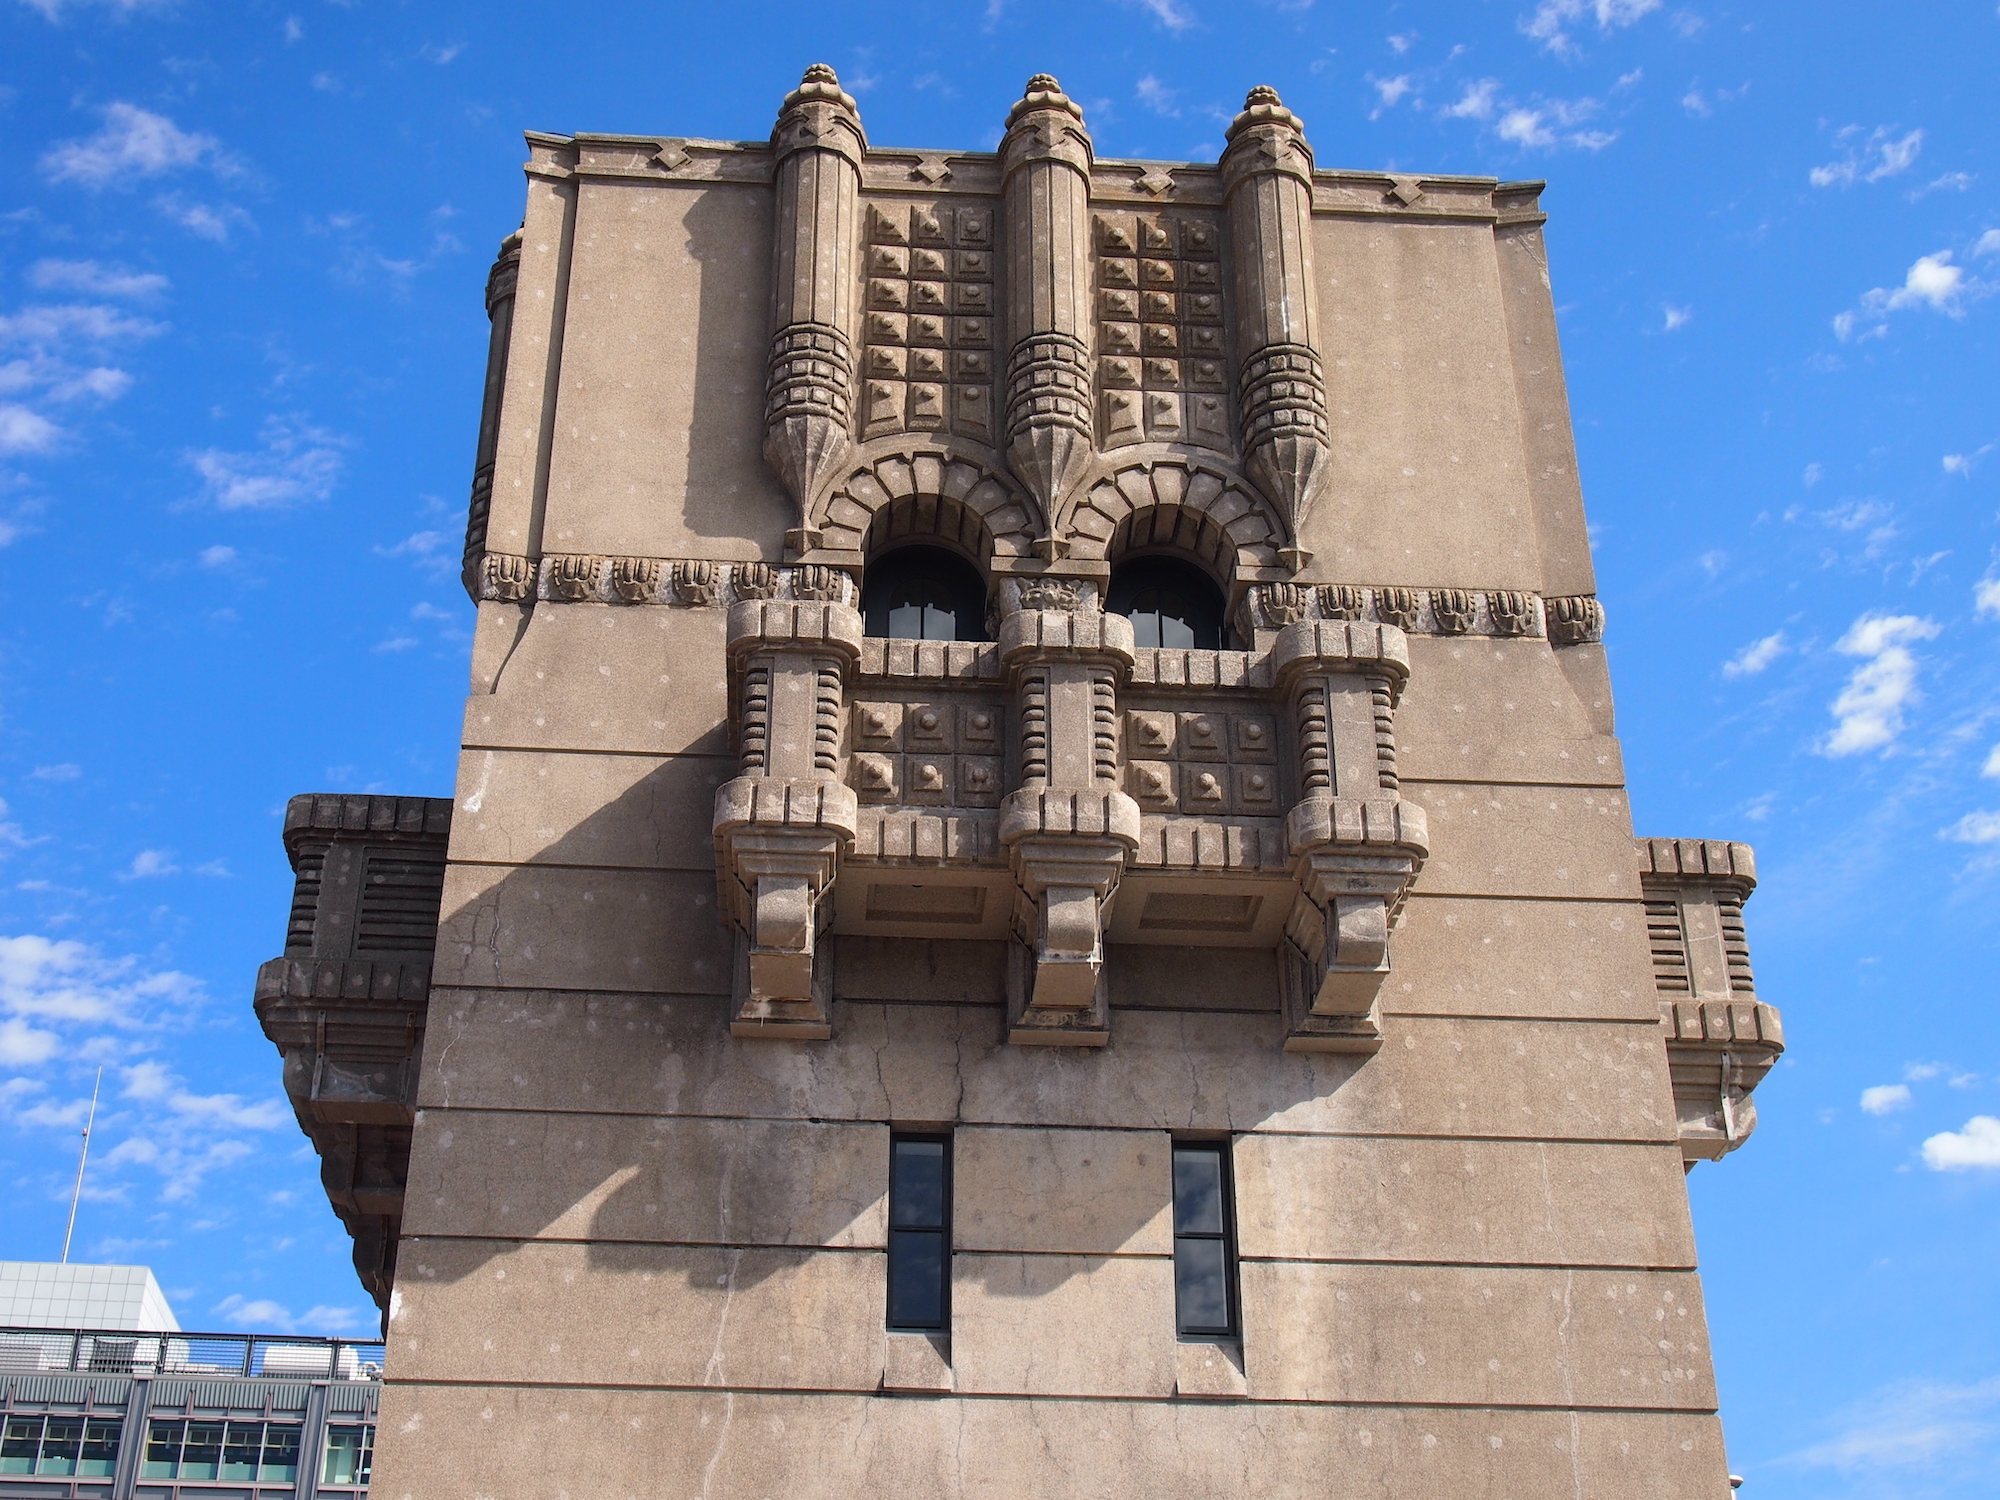 本庁舎中央の塔の部分。